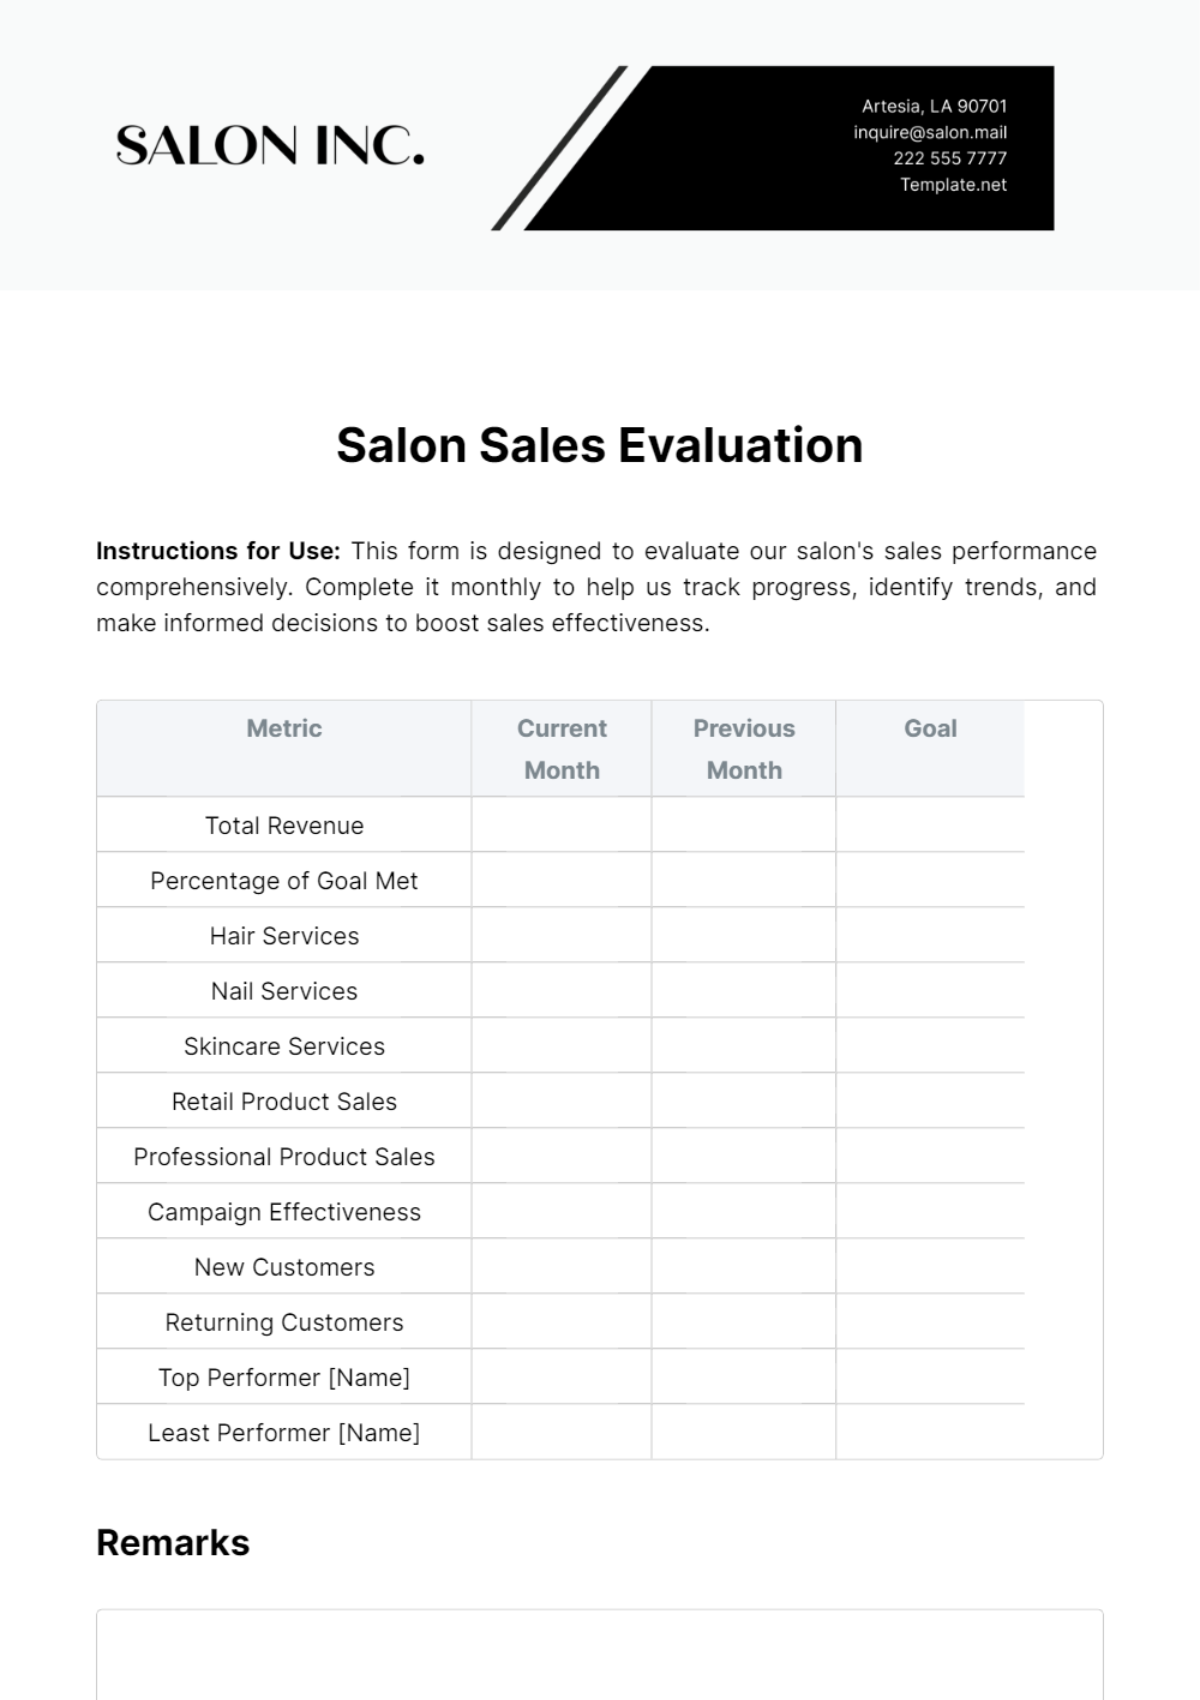 Salon Sales Evaluation Template